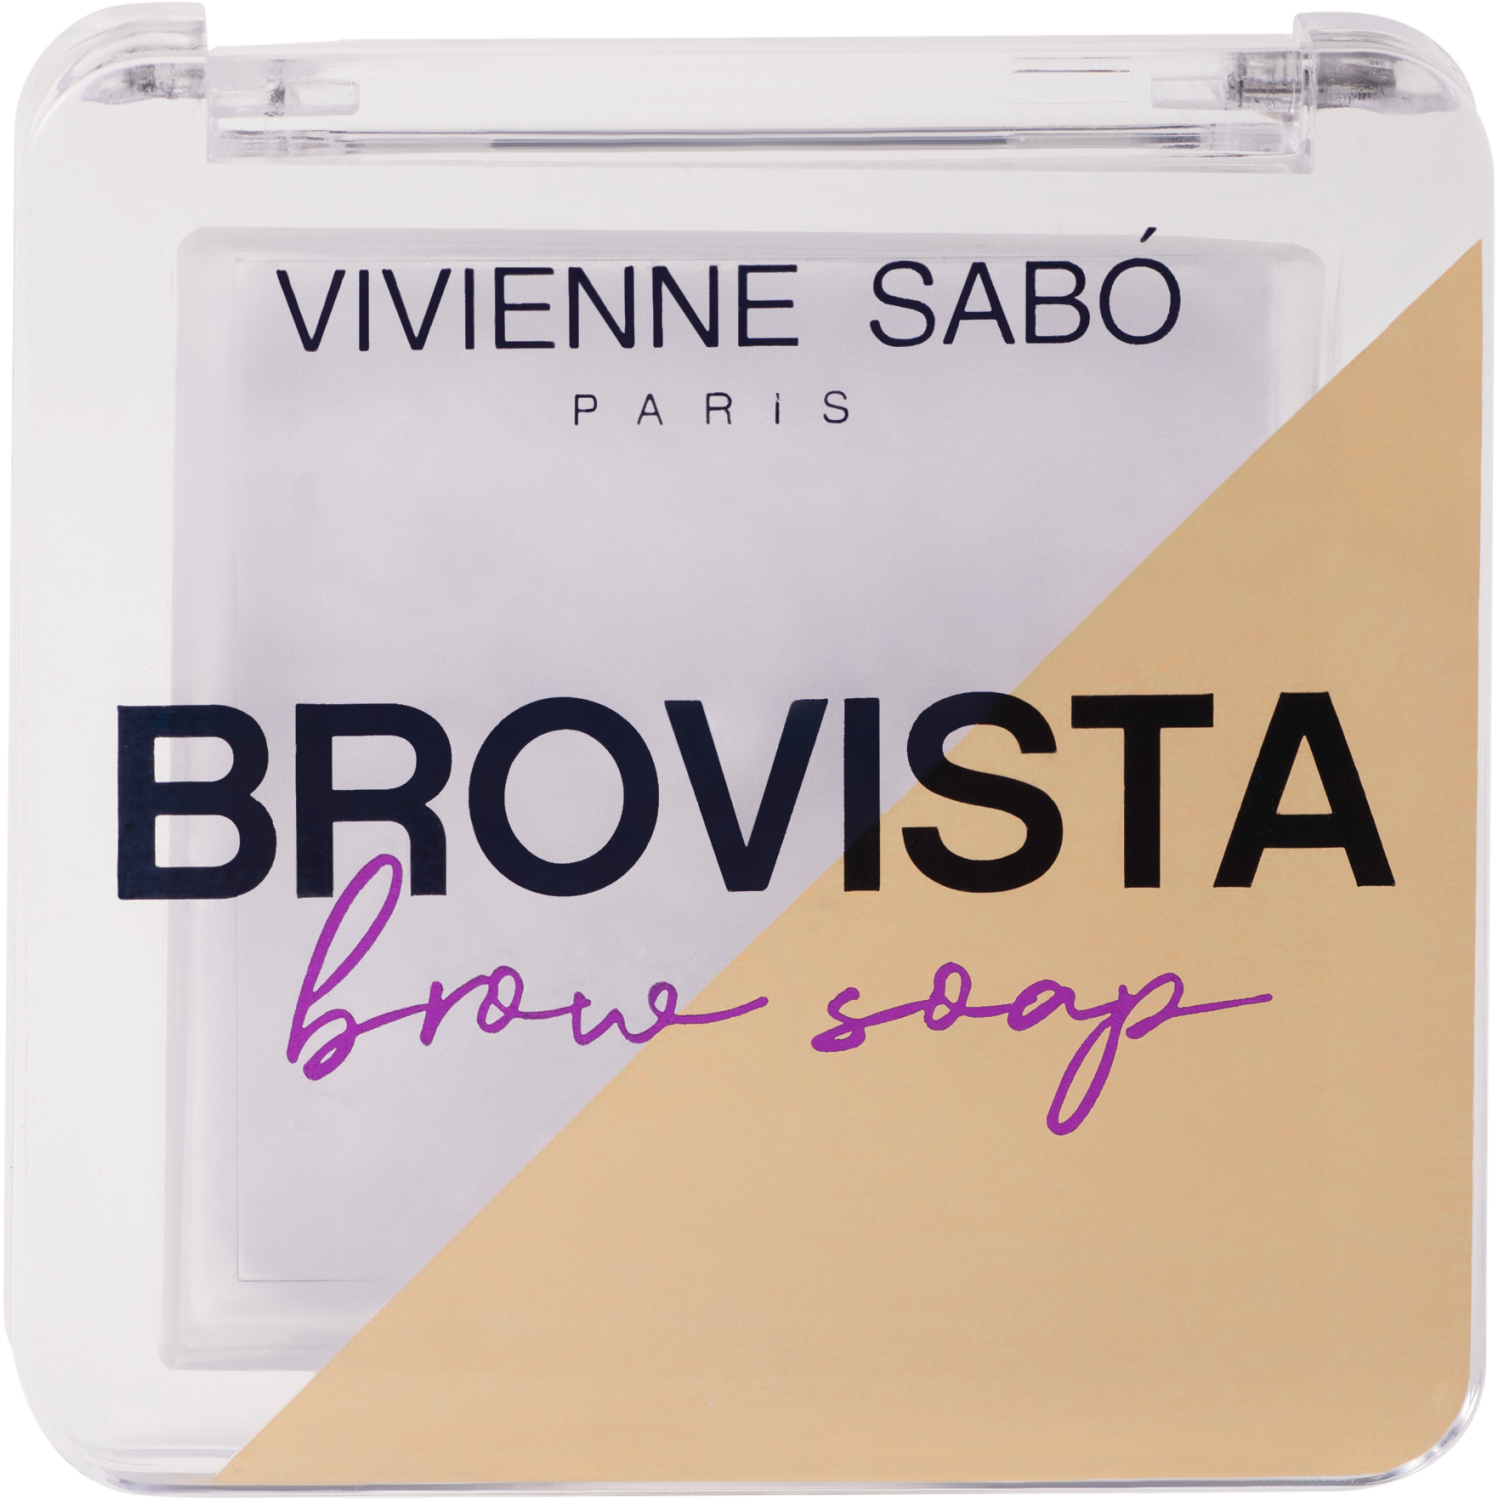 Фиксатор для бровей Vivienne Sabo Brovista brow soap, эффект ламинирования бровей, прозрачно-белесый, 3гр. карандаш для бровей механический тон 306 espresso